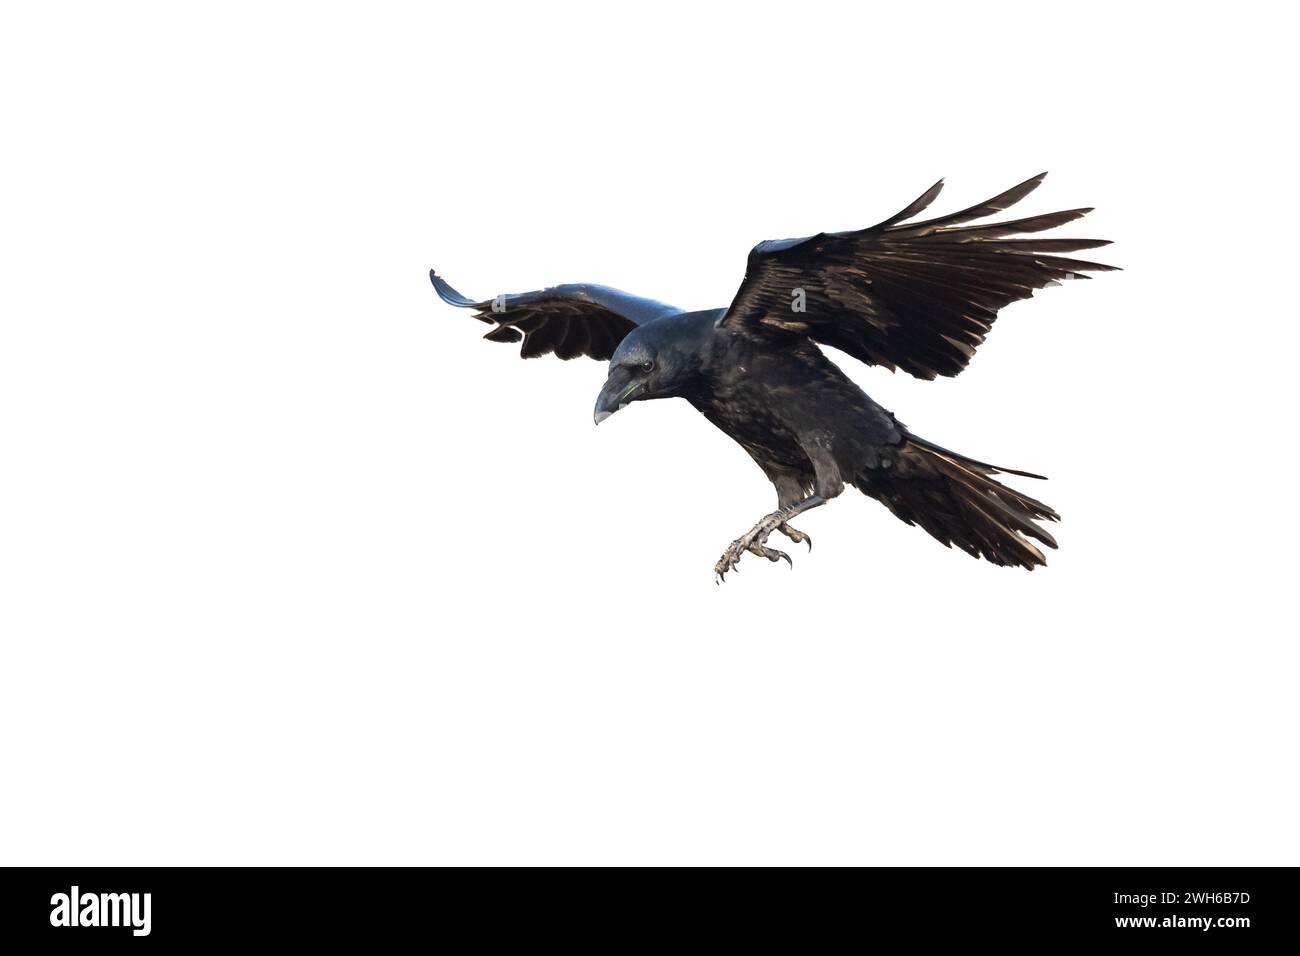 Oiseaux volants ravensisolés sur fond blanc Corvus corax. Halloween - silhouette d'un grand oiseau noir en vol Banque D'Images